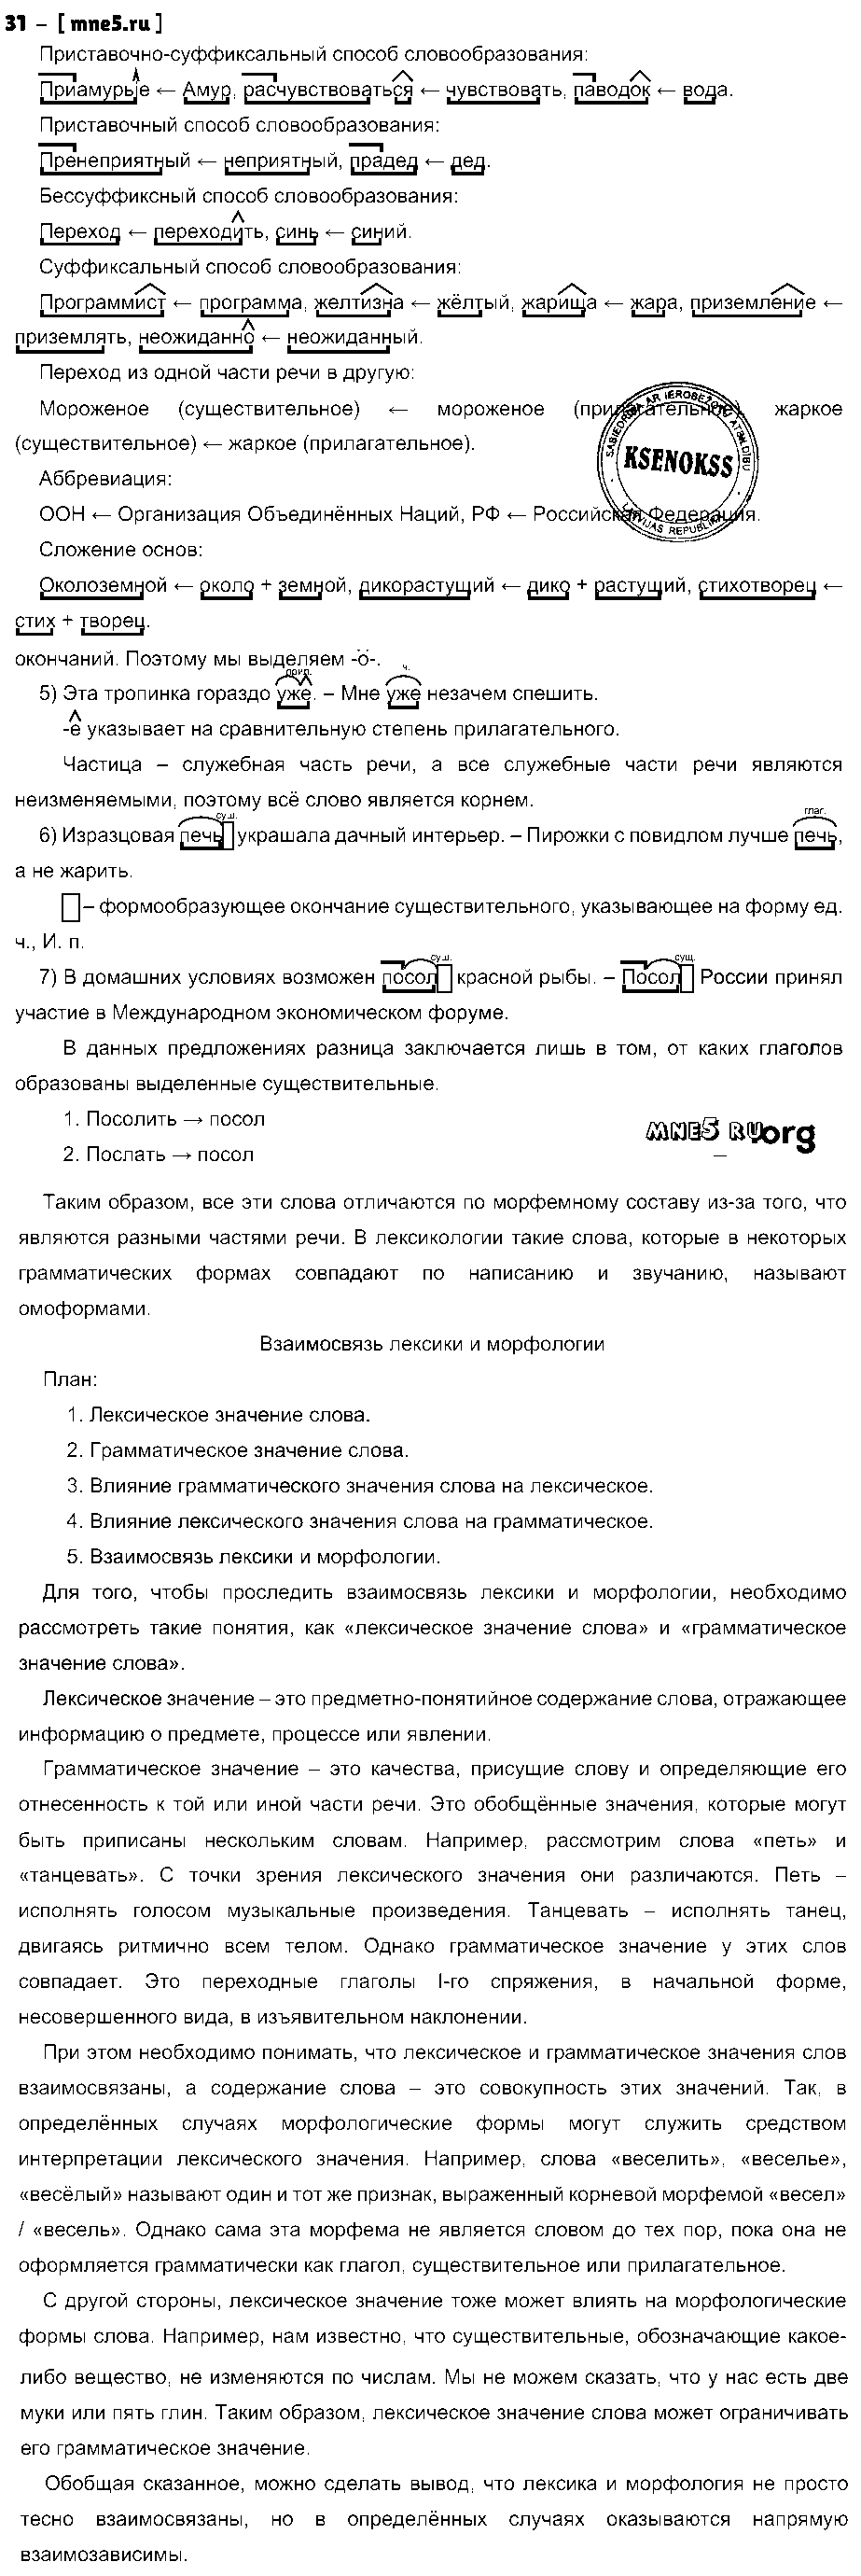 ГДЗ Русский язык 9 класс - 31